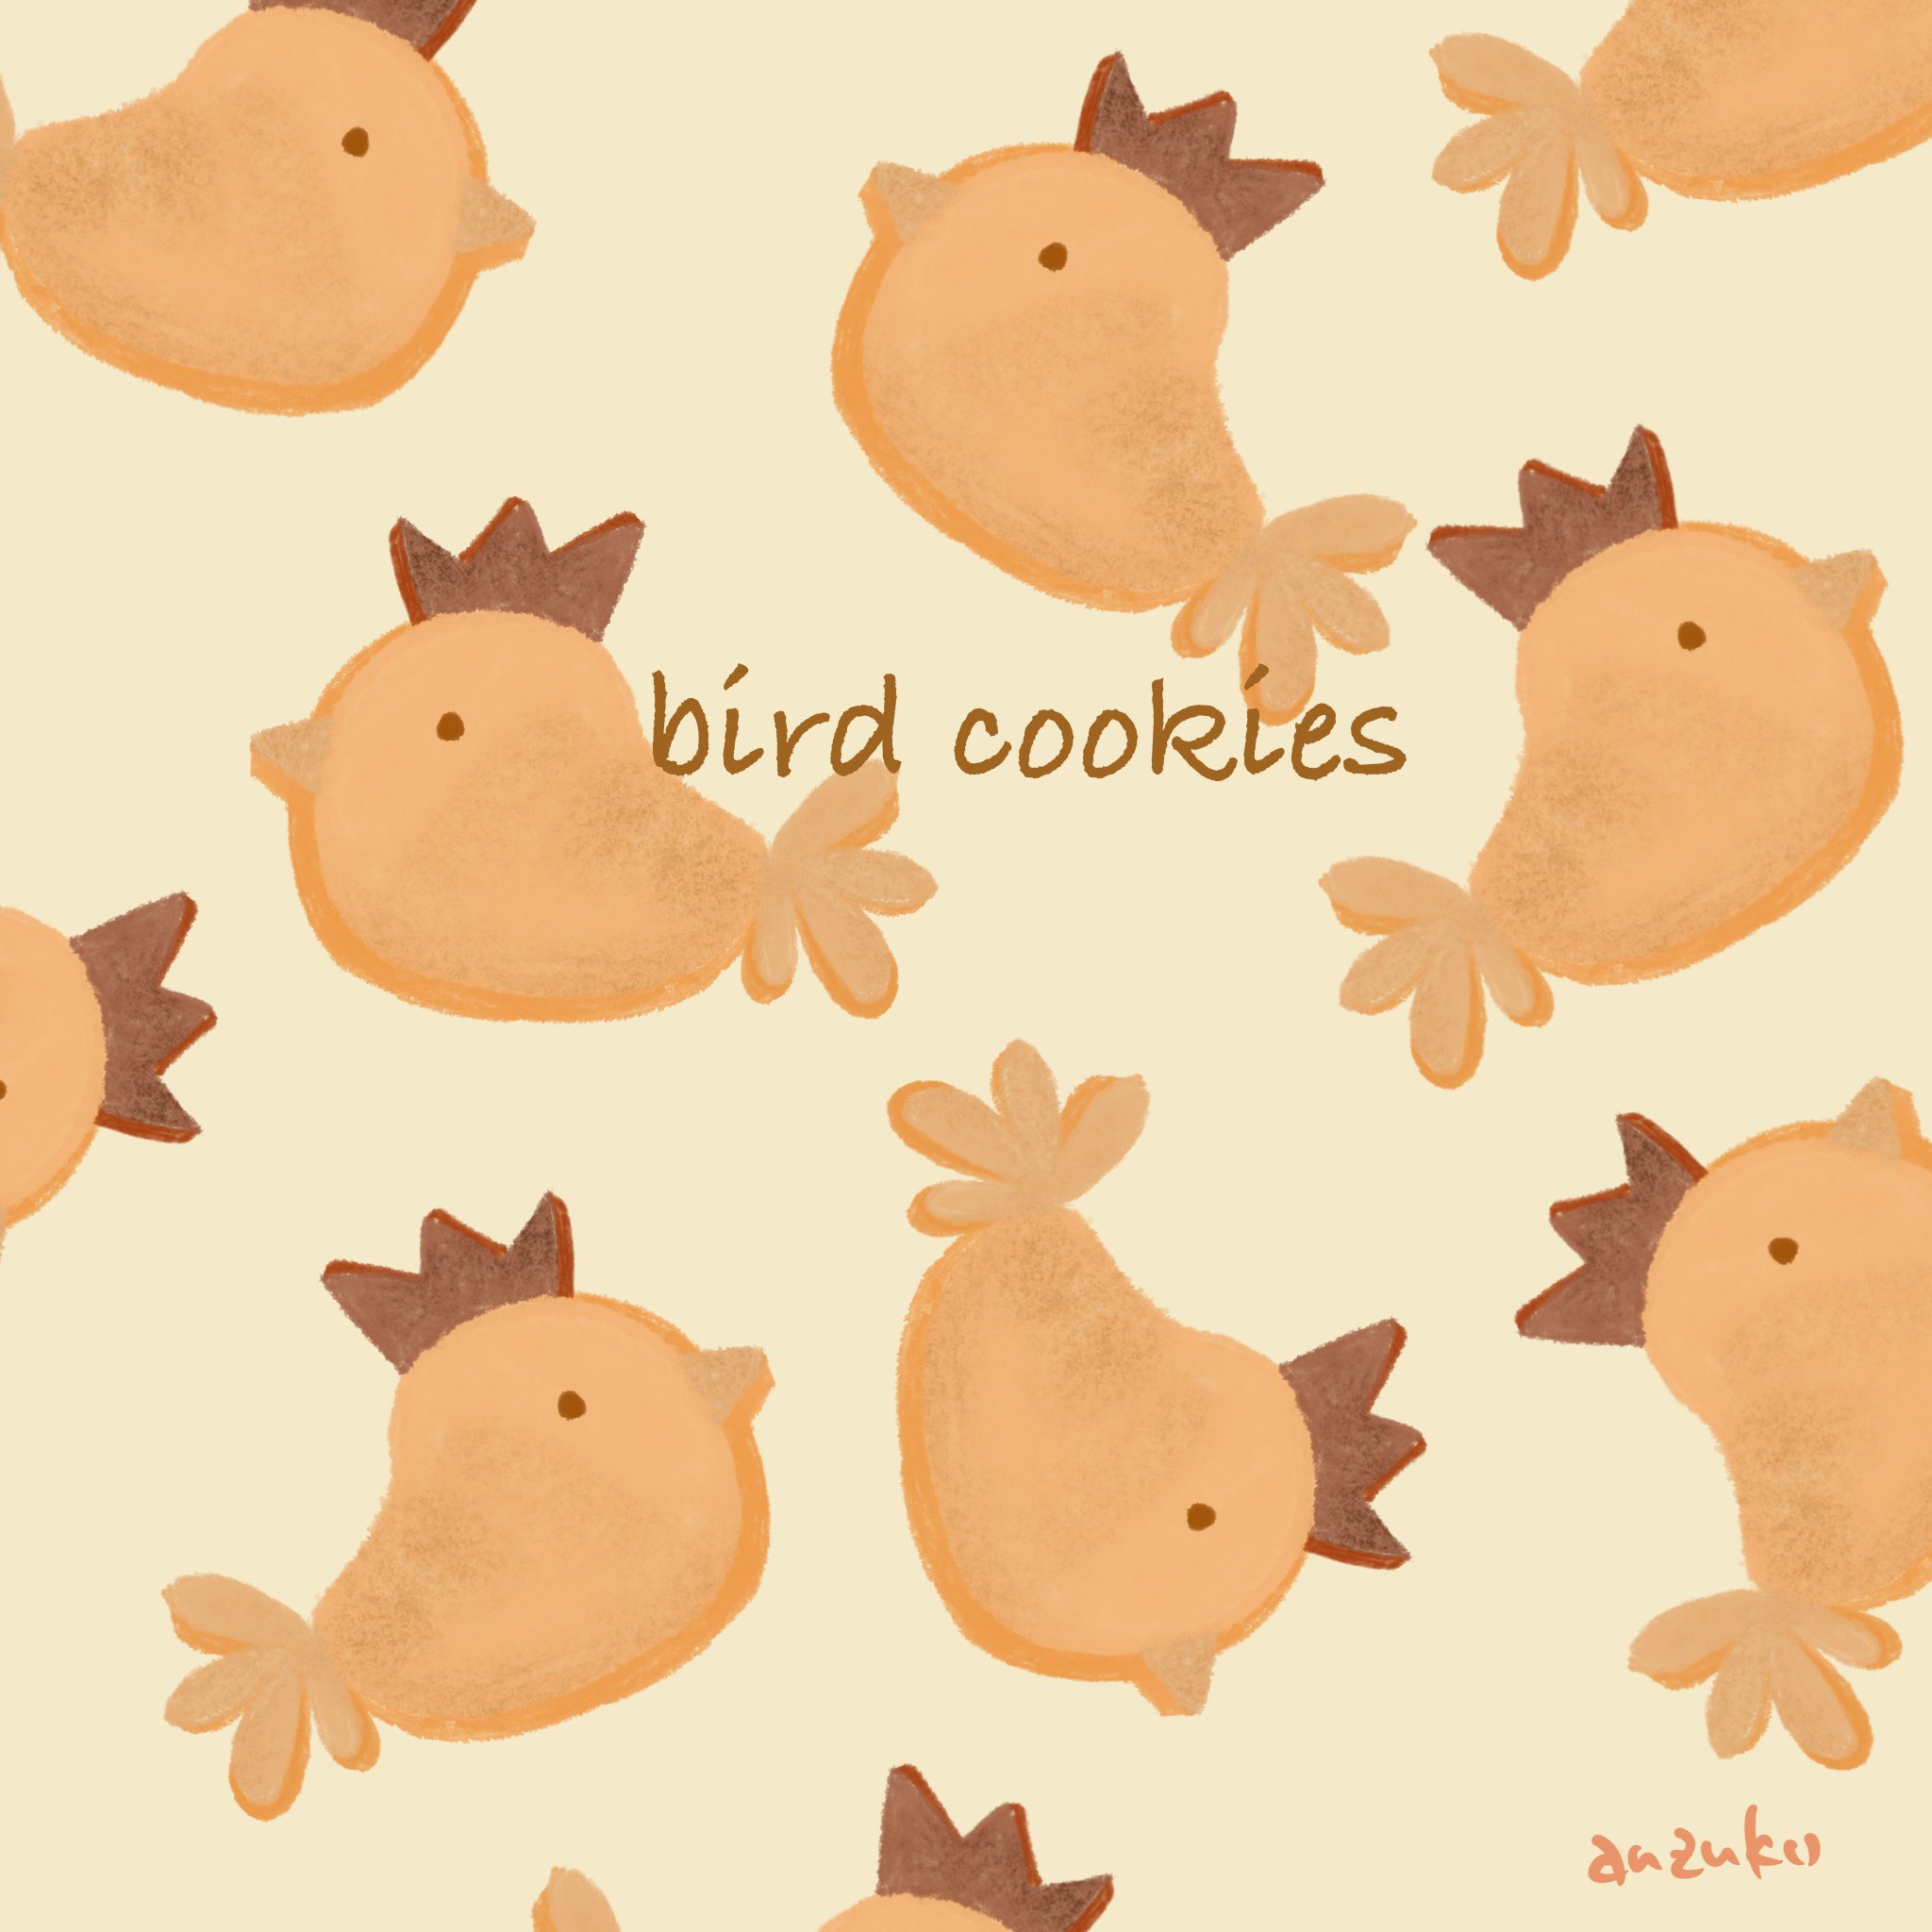 あんずこ クッキー Cookie フードイラスト Food 鳥イラスト かわいいイラスト イラスト好きな人と繋がりたい Bird 可愛いイラスト イラストレーター Illustration Ipadprocreate T Co Z7l24xbfin Twitter